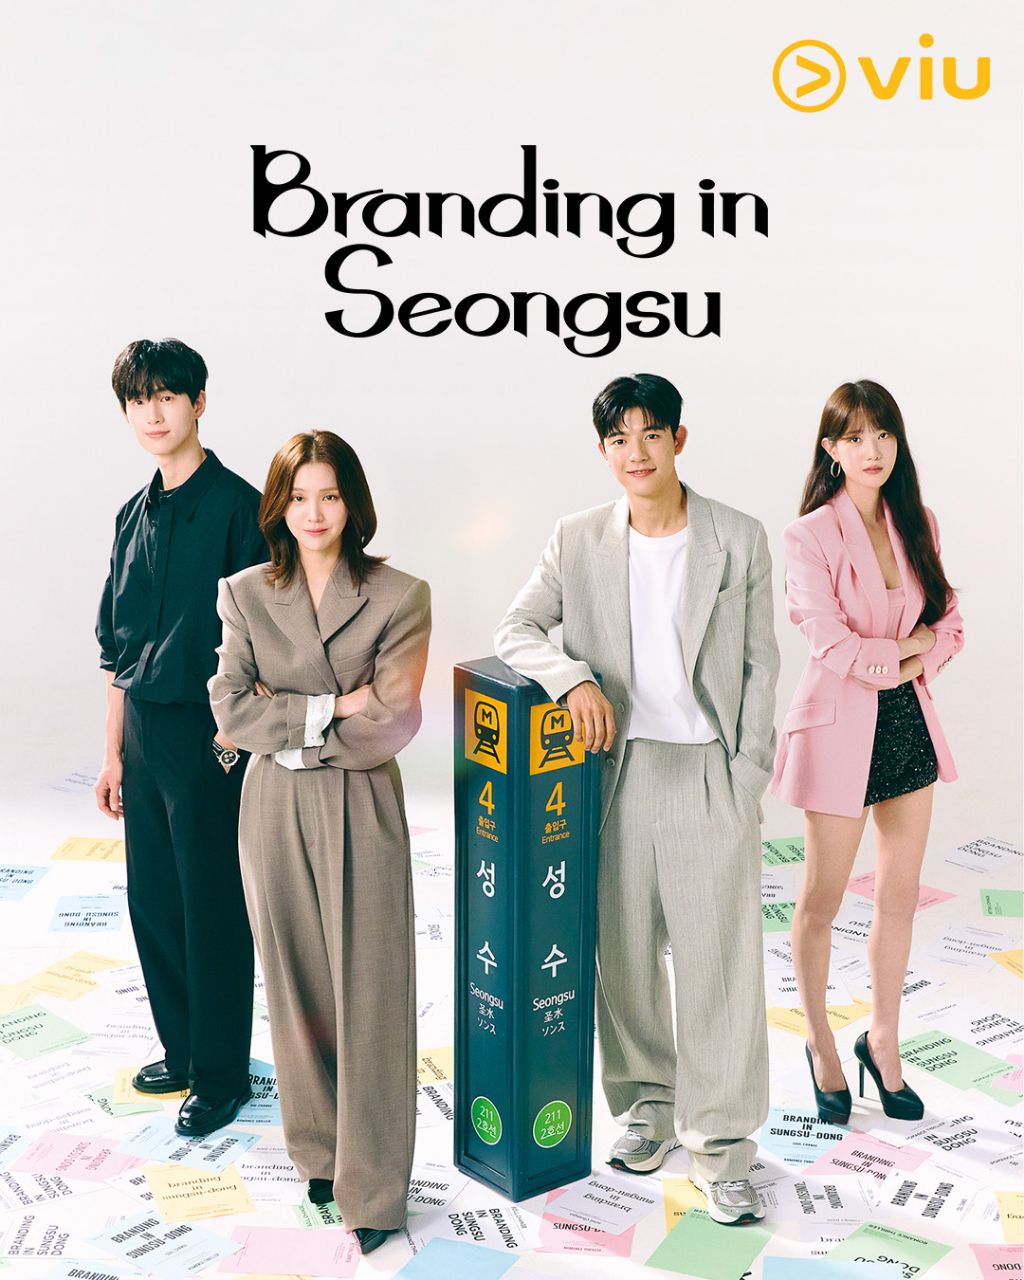 مسلسل العلامة التجارية في سيونغسو Branding in Seongsu الحلقة 1